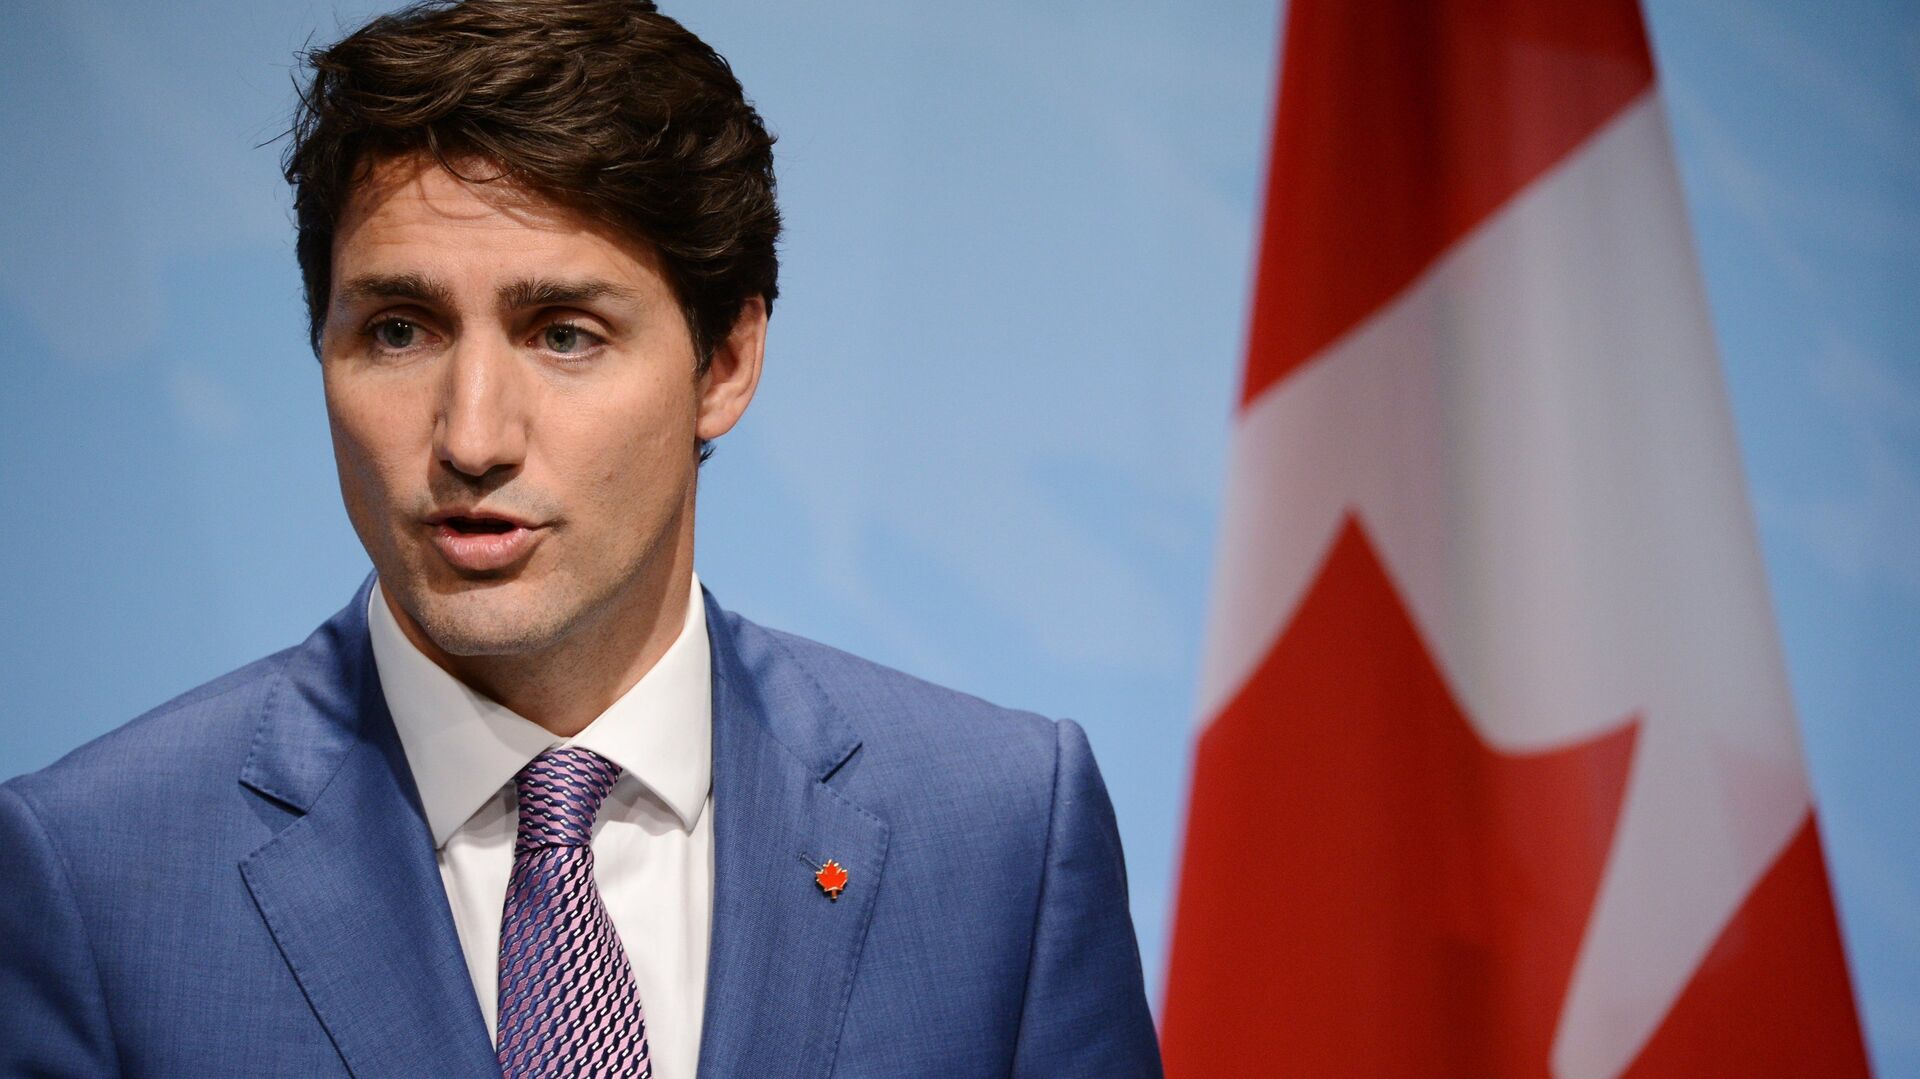 Трюдо: Канада не знает, что за три объекта были сбиты над Северной Америкой